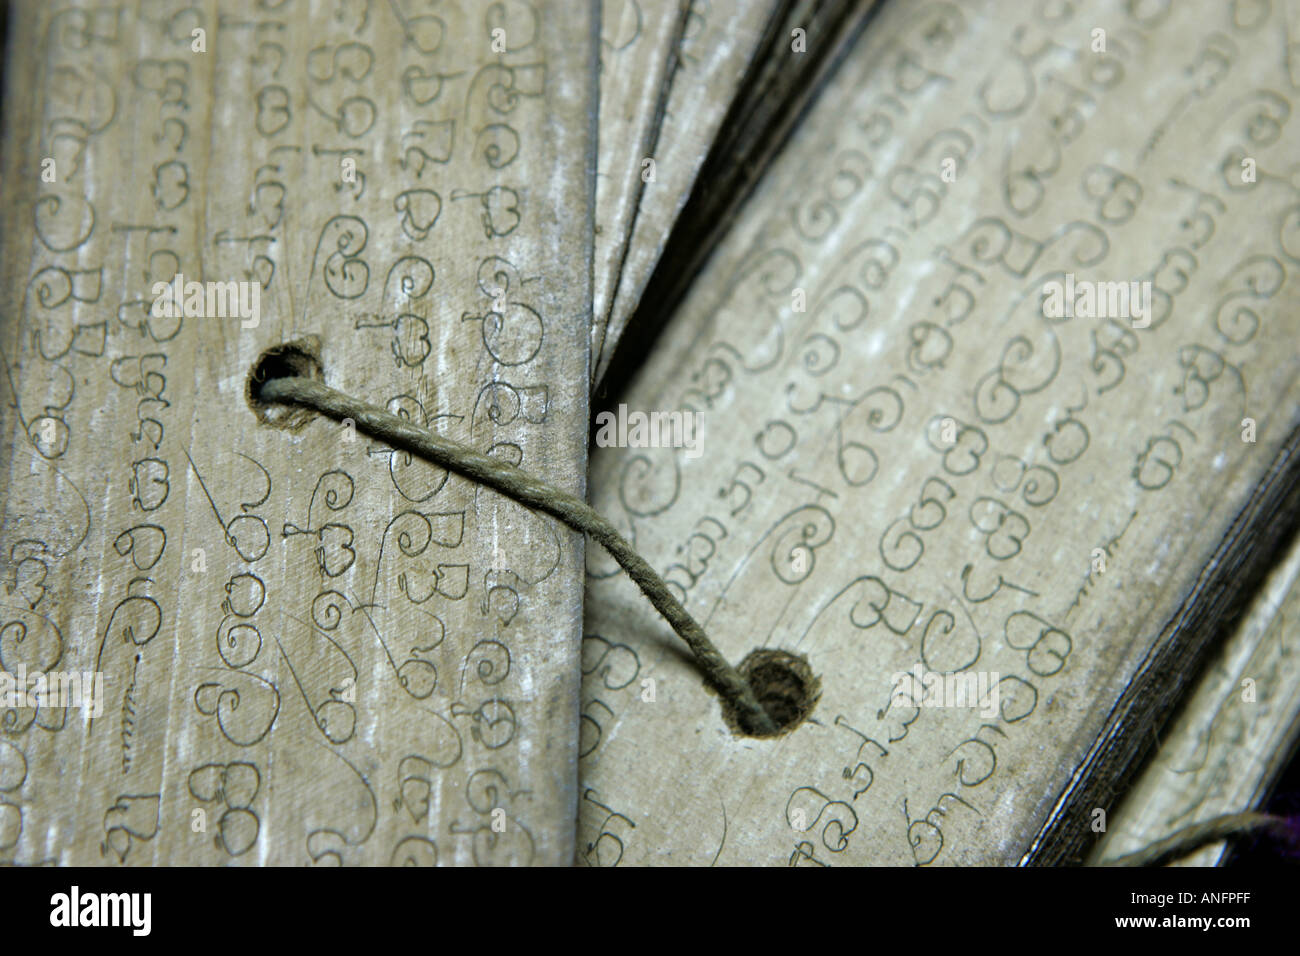 LKA, Sri Lanka : vieux scripts sur palmleave, vélin, papier parchemin, avec traditionel recettes ayurvédiques Banque D'Images